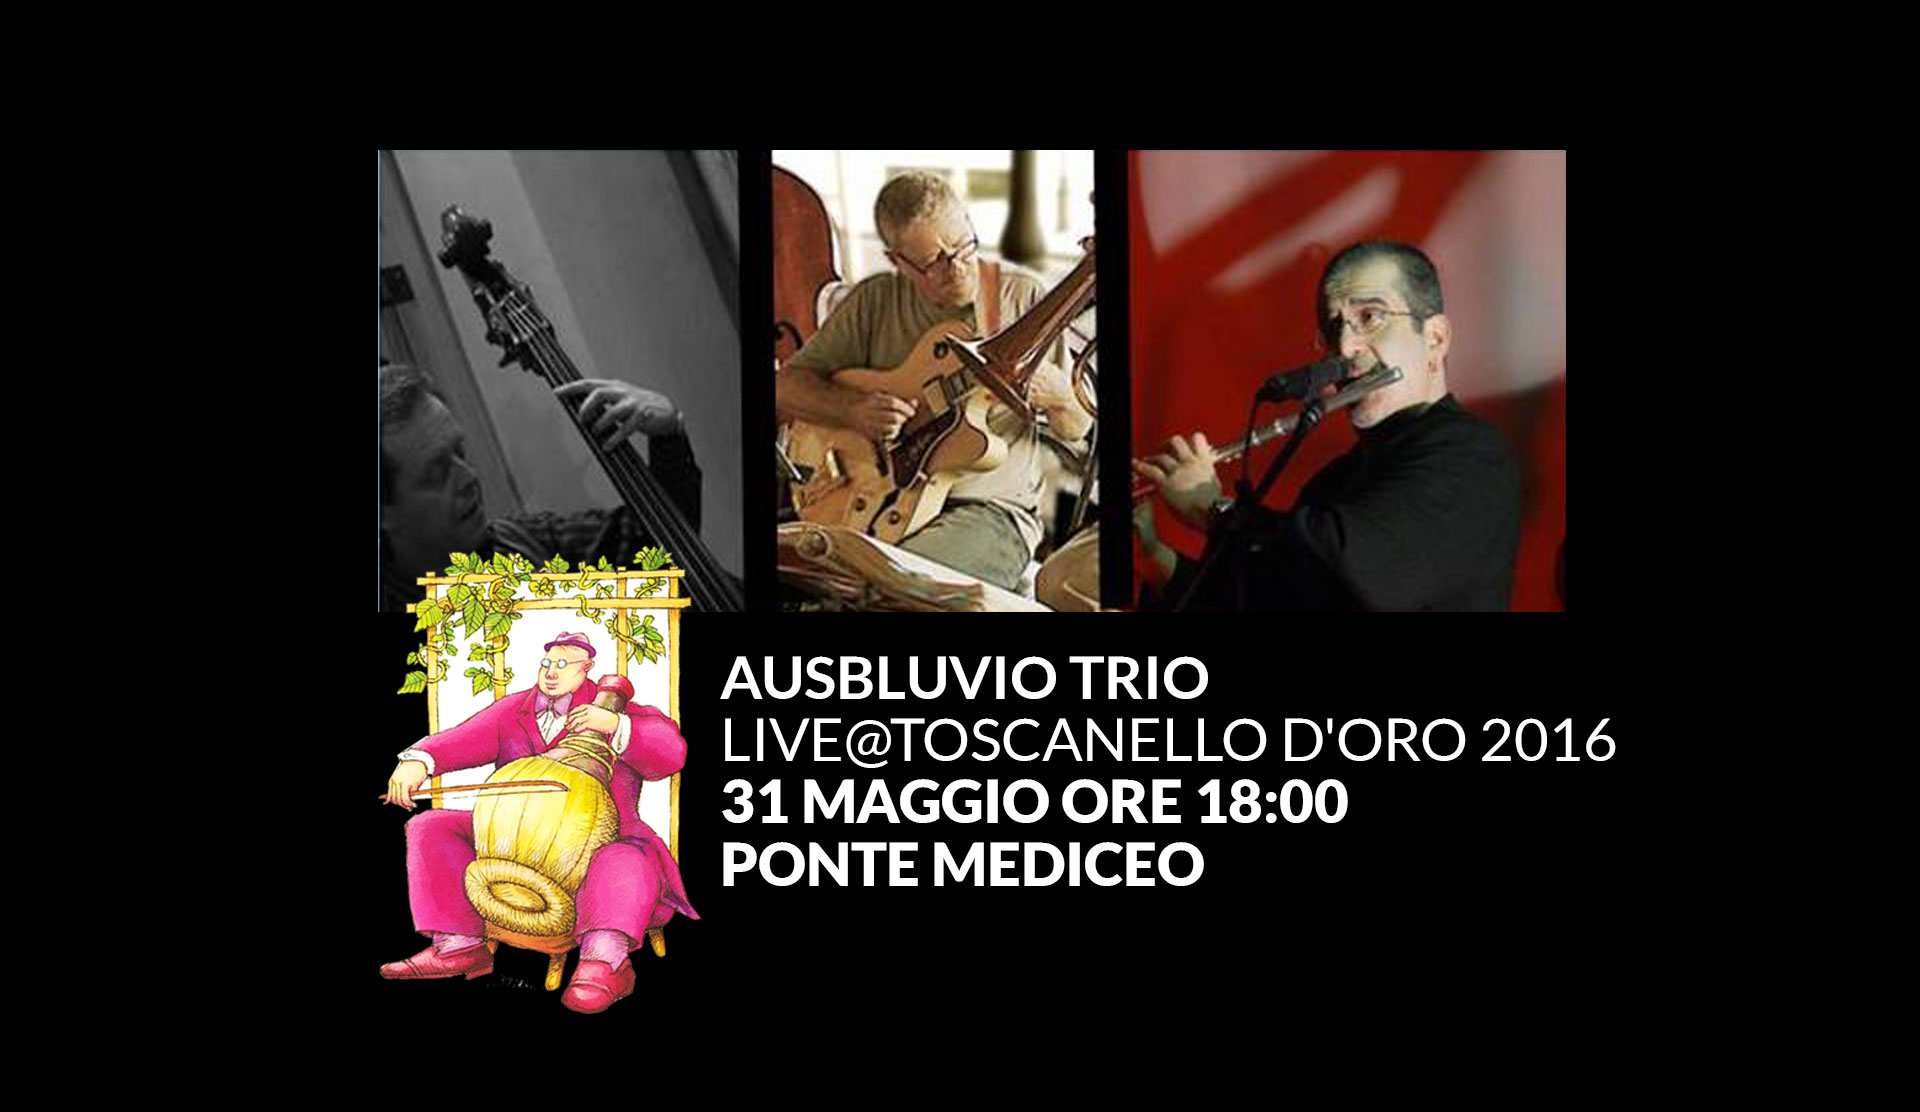 Ausbluvio trio live@Toscanello aperitivo inaugurale Ponte Mediceo 31 Maggio ore 18